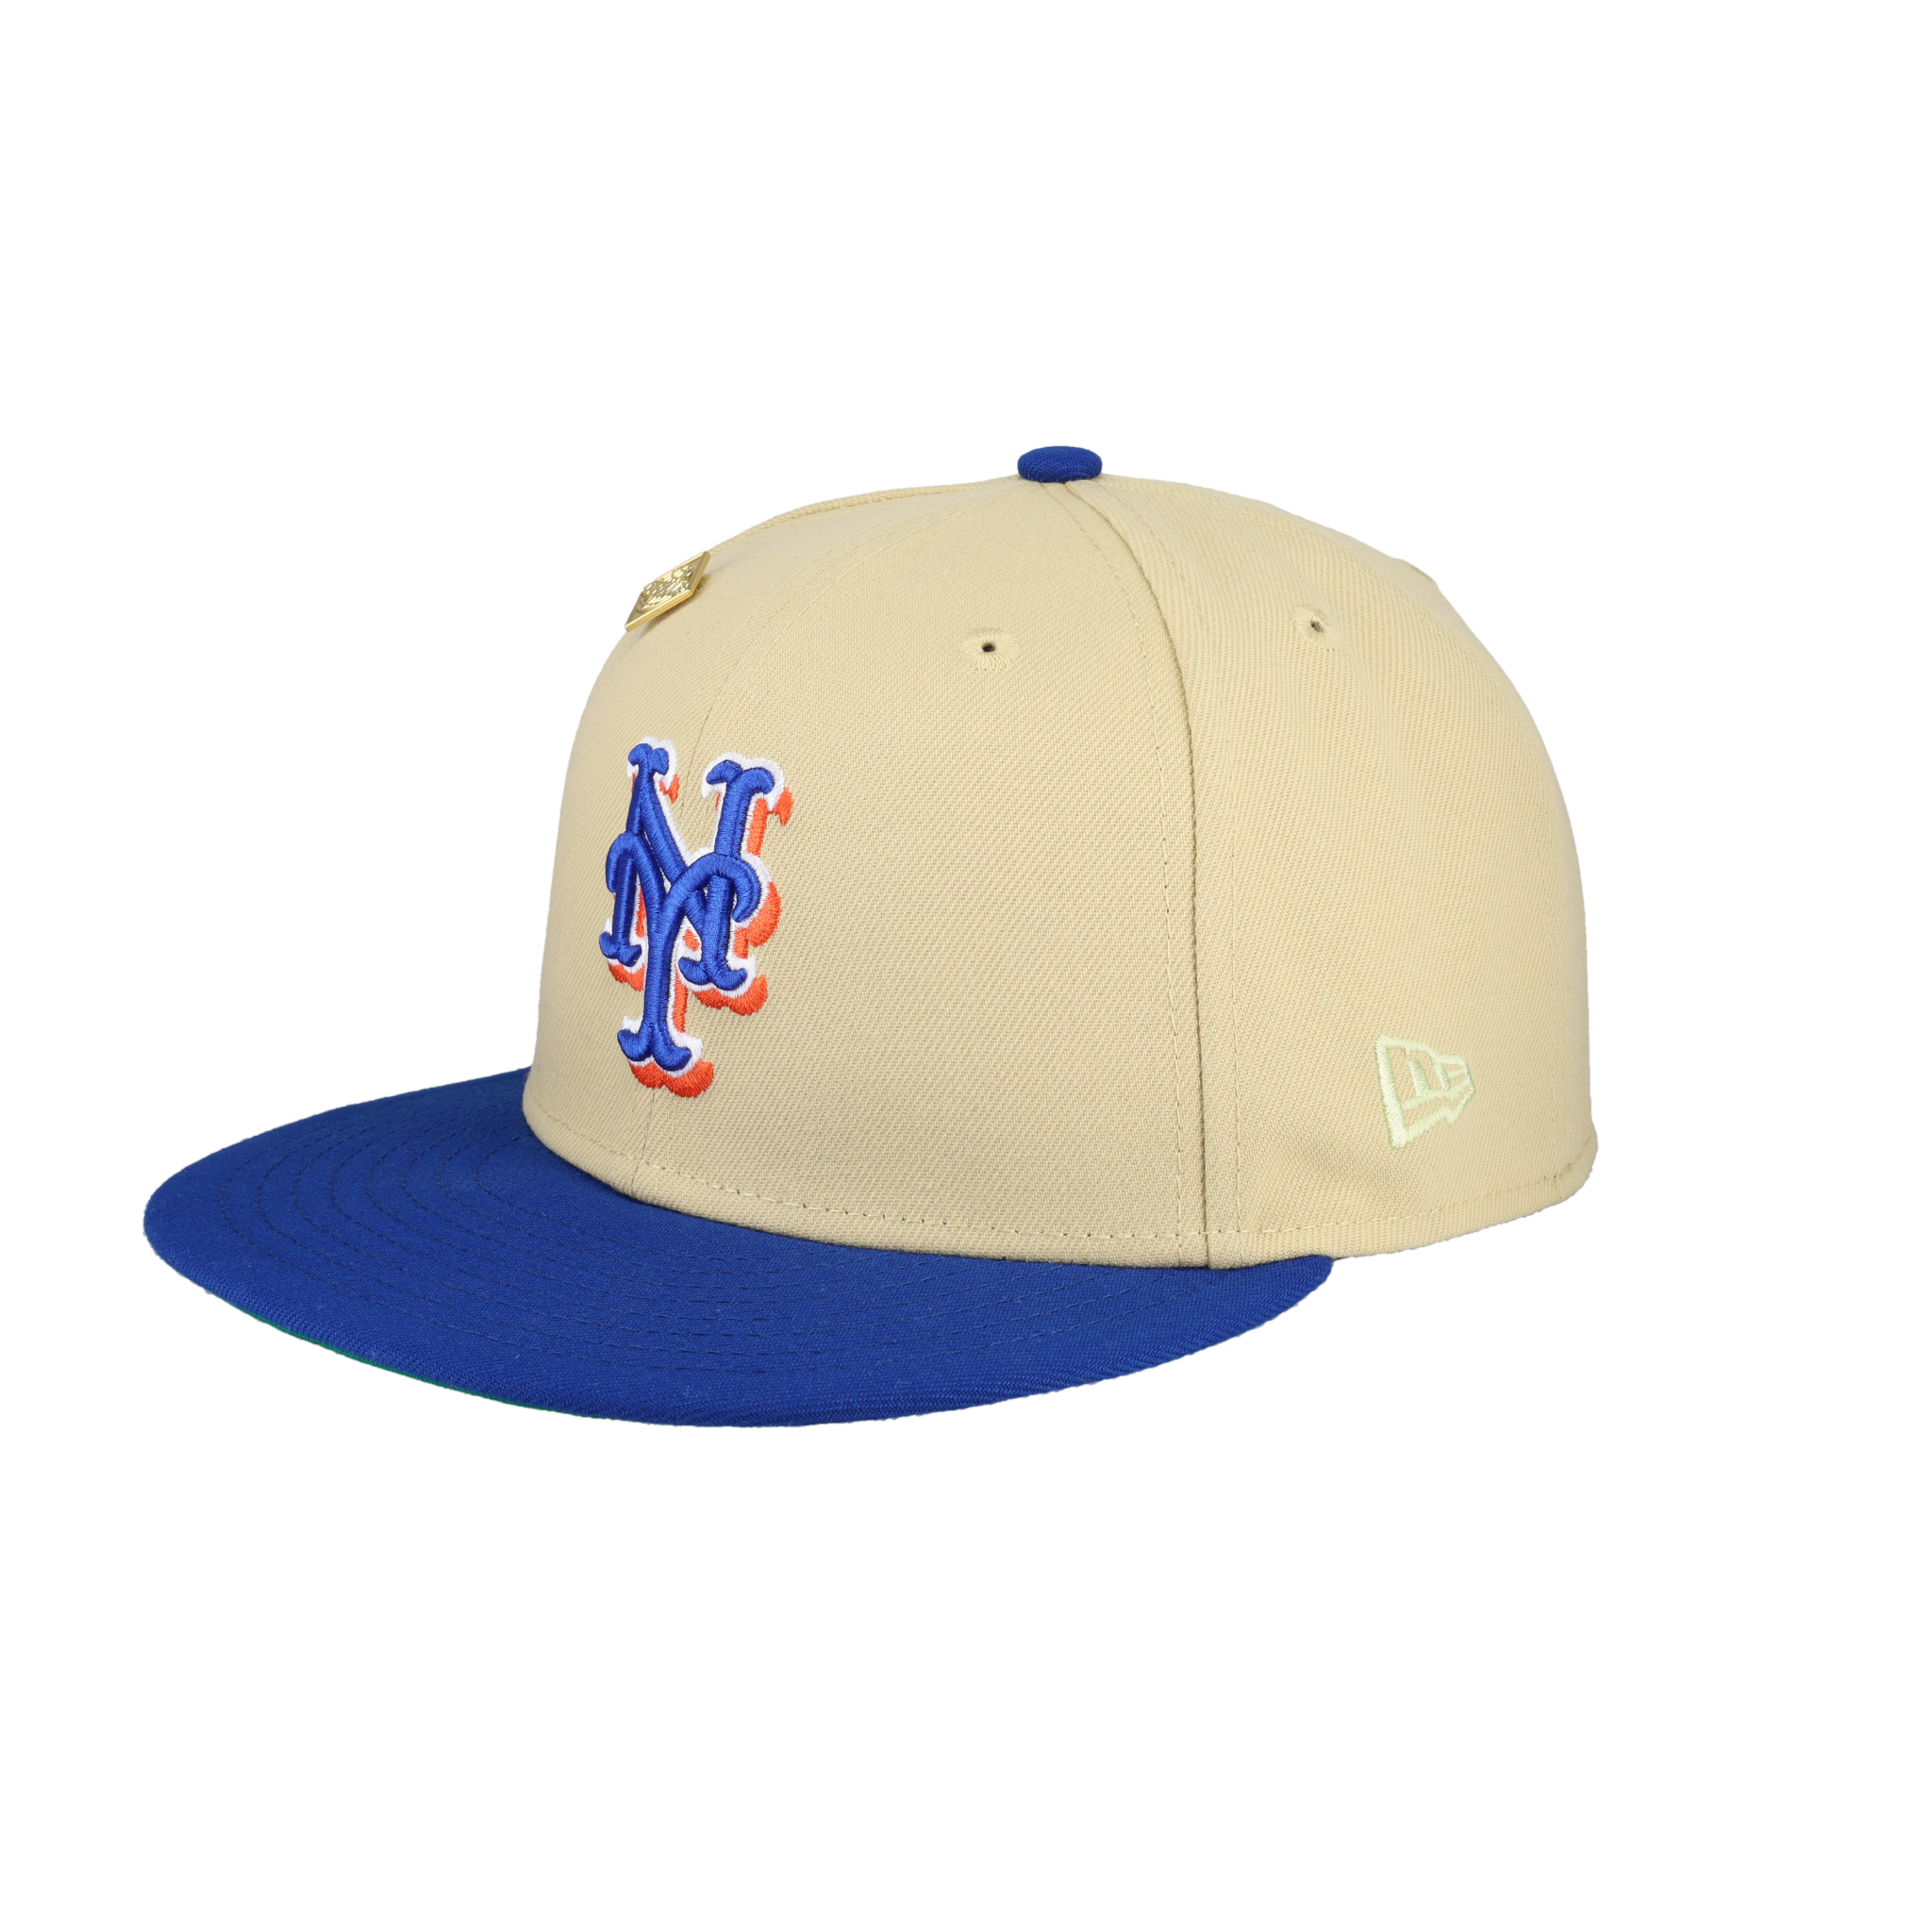 NEW YORK METS SHEA STADIUM 40TH ANNIVERSARY NEW ERA FITTED CAP